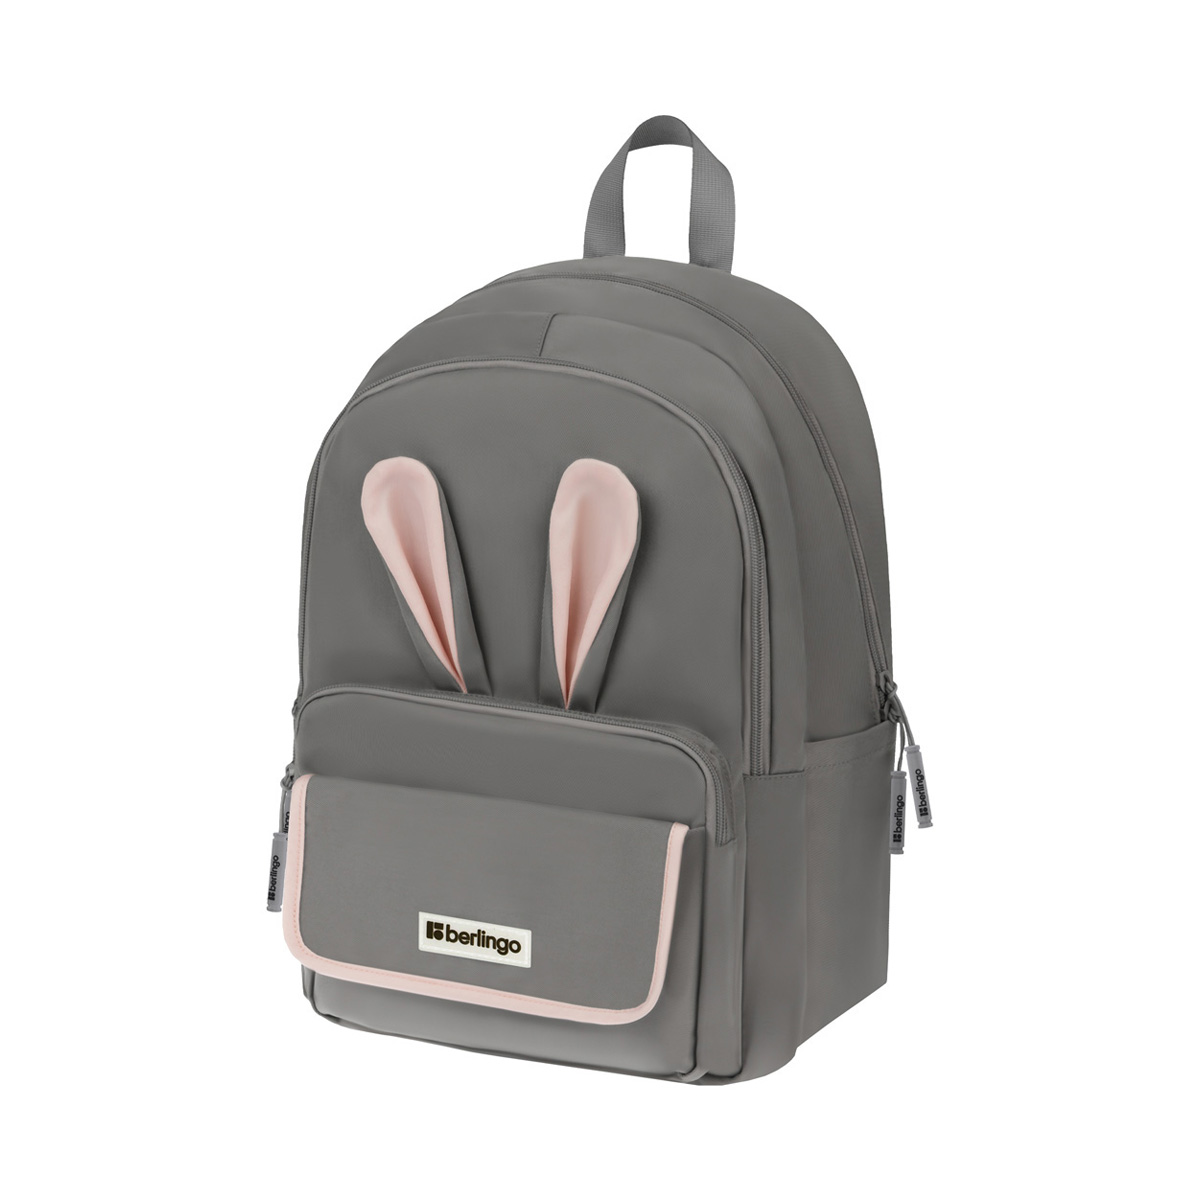 Рюкзак Berlingo Cool Bunny grey 41*29*11см, 2 отделения, 4 кармана, уплотненная спинка